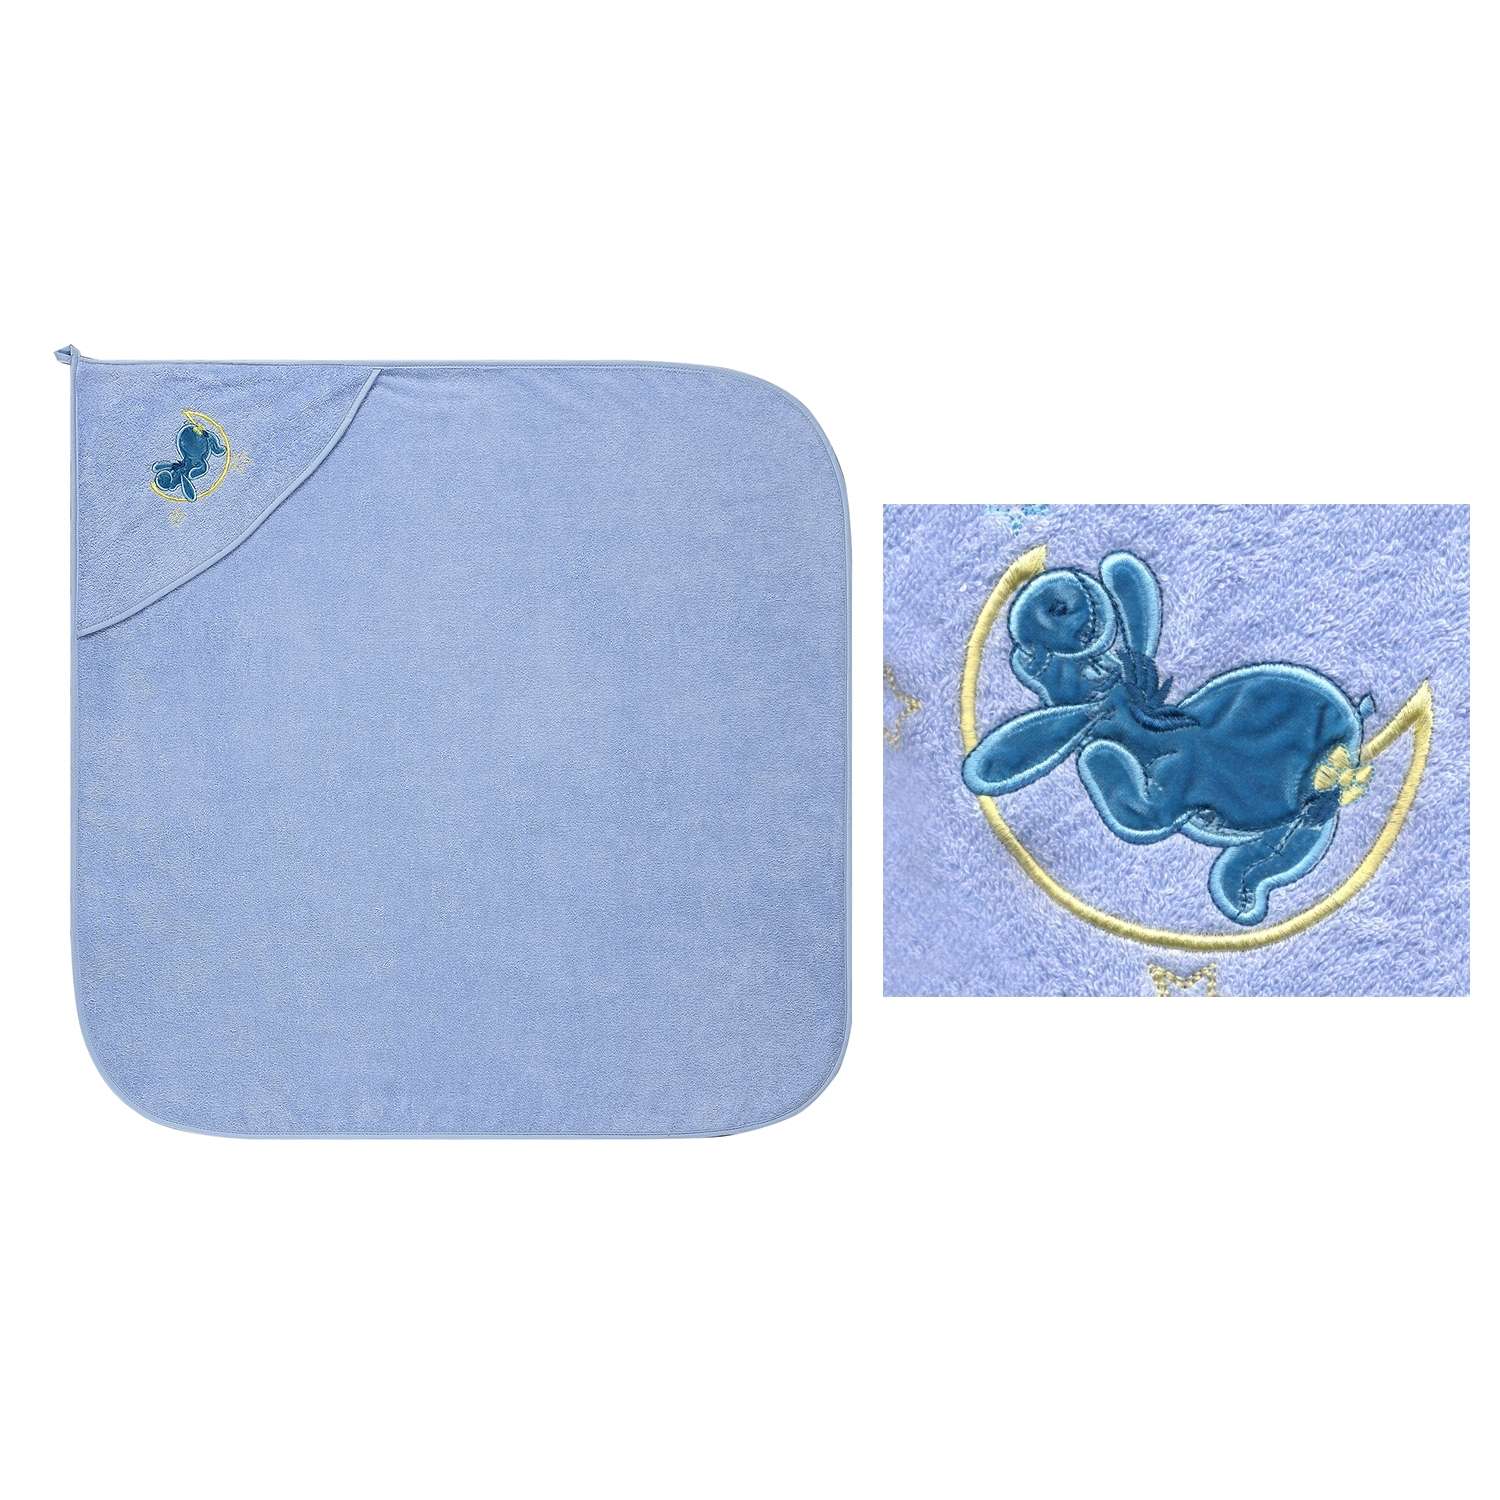 Уголок купальный Cleanelly с вышивкой DisneyBaby - фото 4